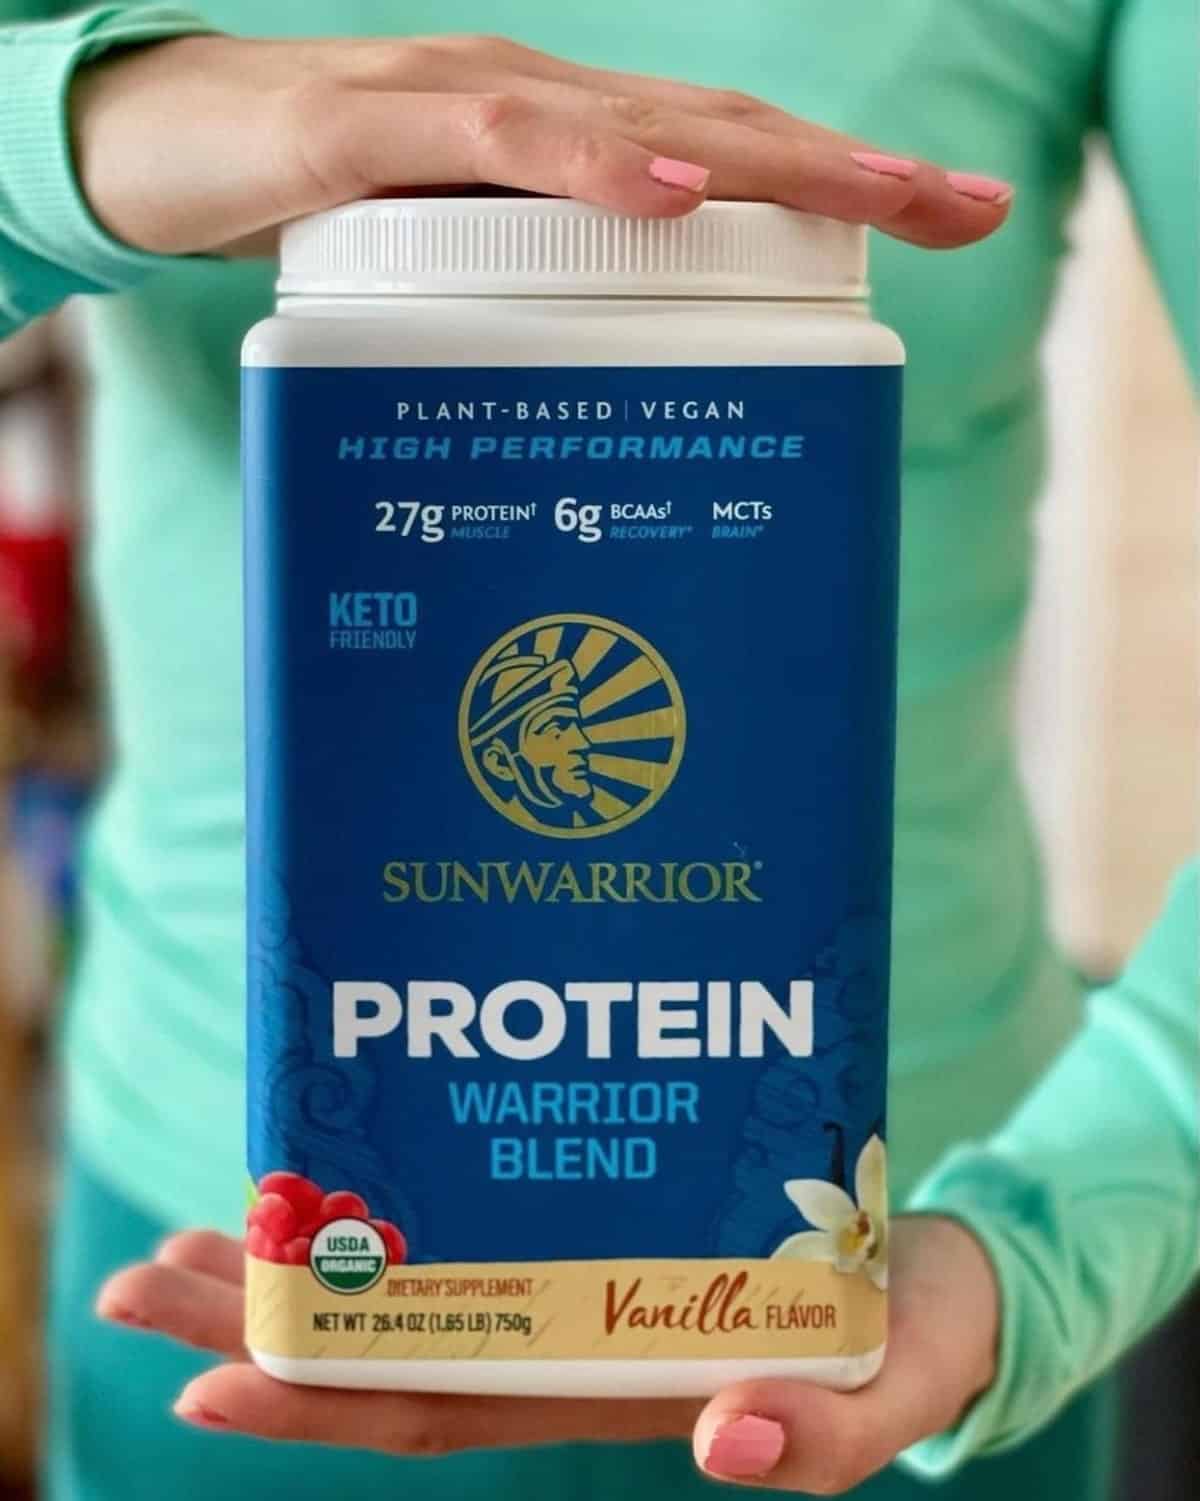 Sunwarrior protein powder.